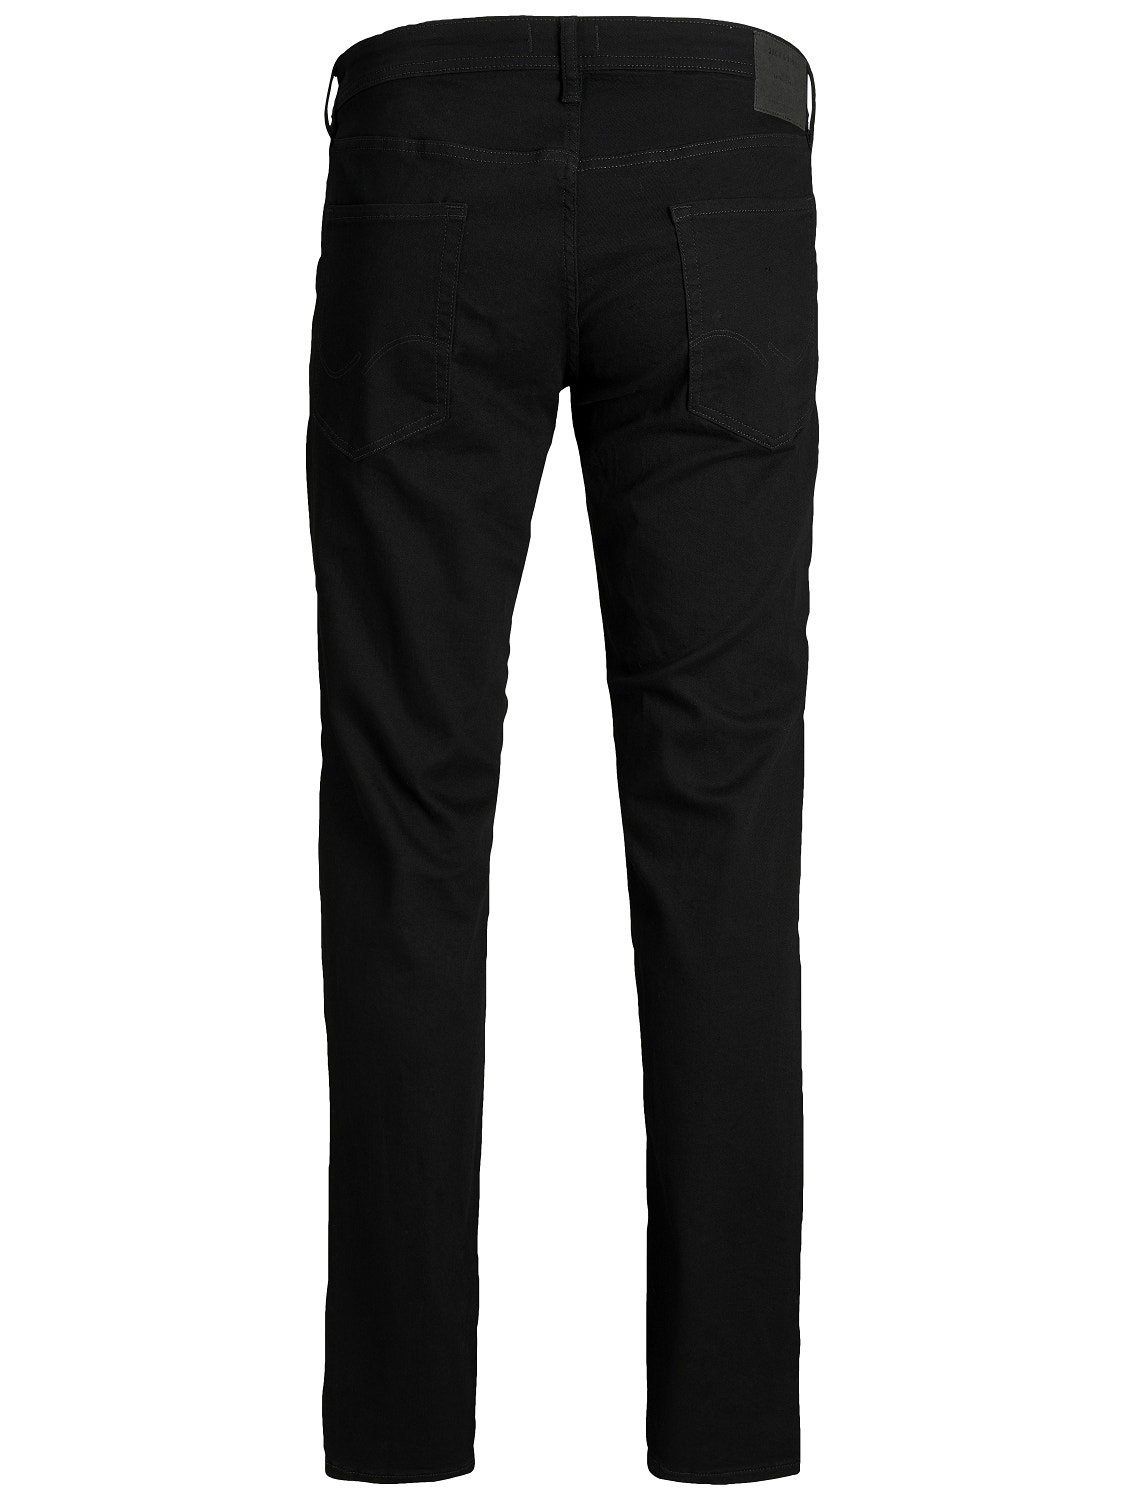 Jack & Jones Plus Size JJITIM JJORIGINAL AM 816 PLS Jeans Slim Straight Fit -Black Denim - 12153645